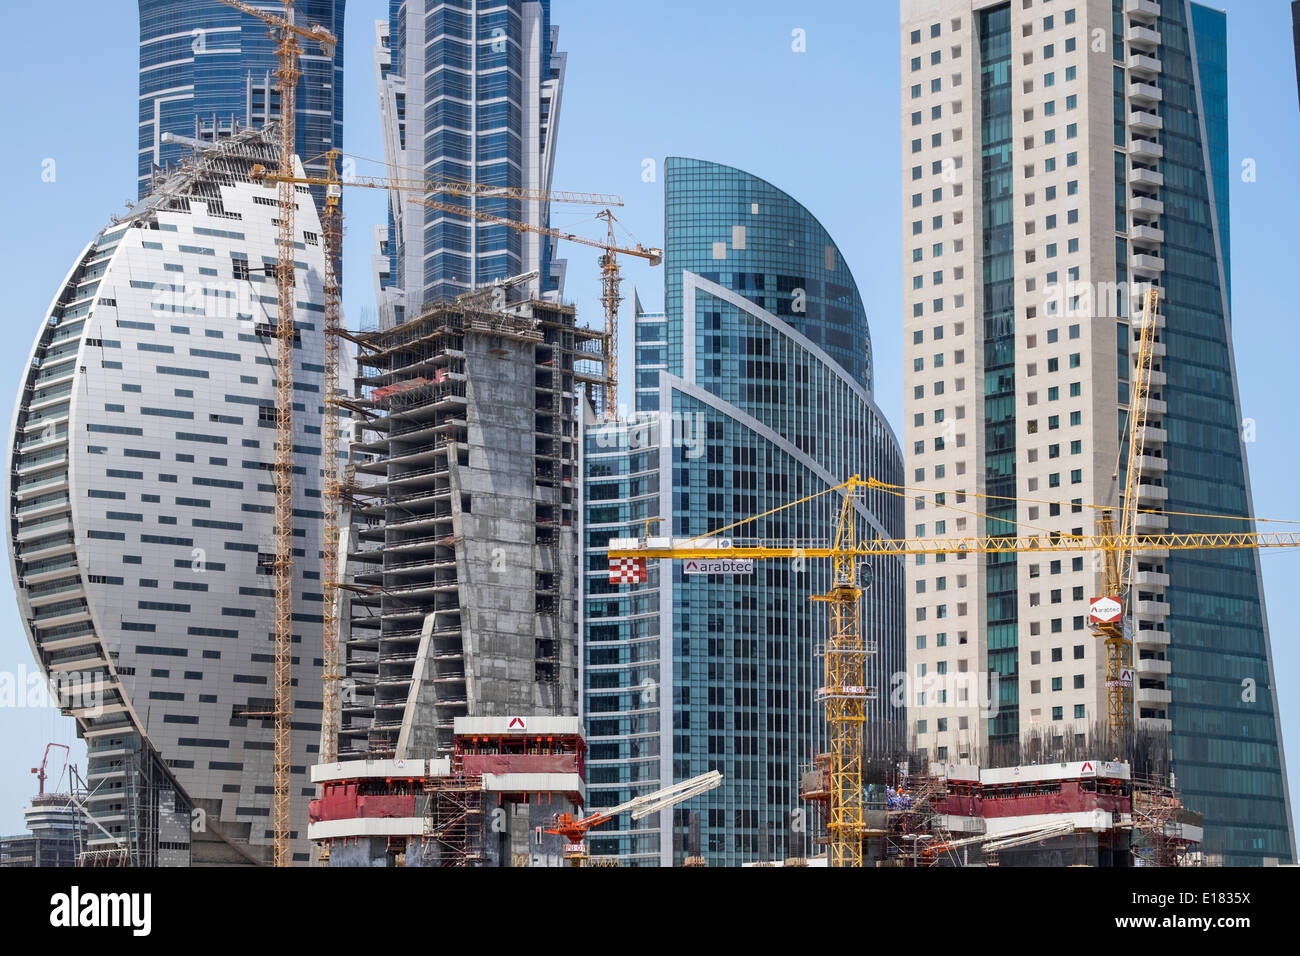 Site de construction avec de nombreux gratte-ciel en construction dans le quartier de la baie de nouvelles affaires à Dubaï Émirats Arabes Unis Banque D'Images